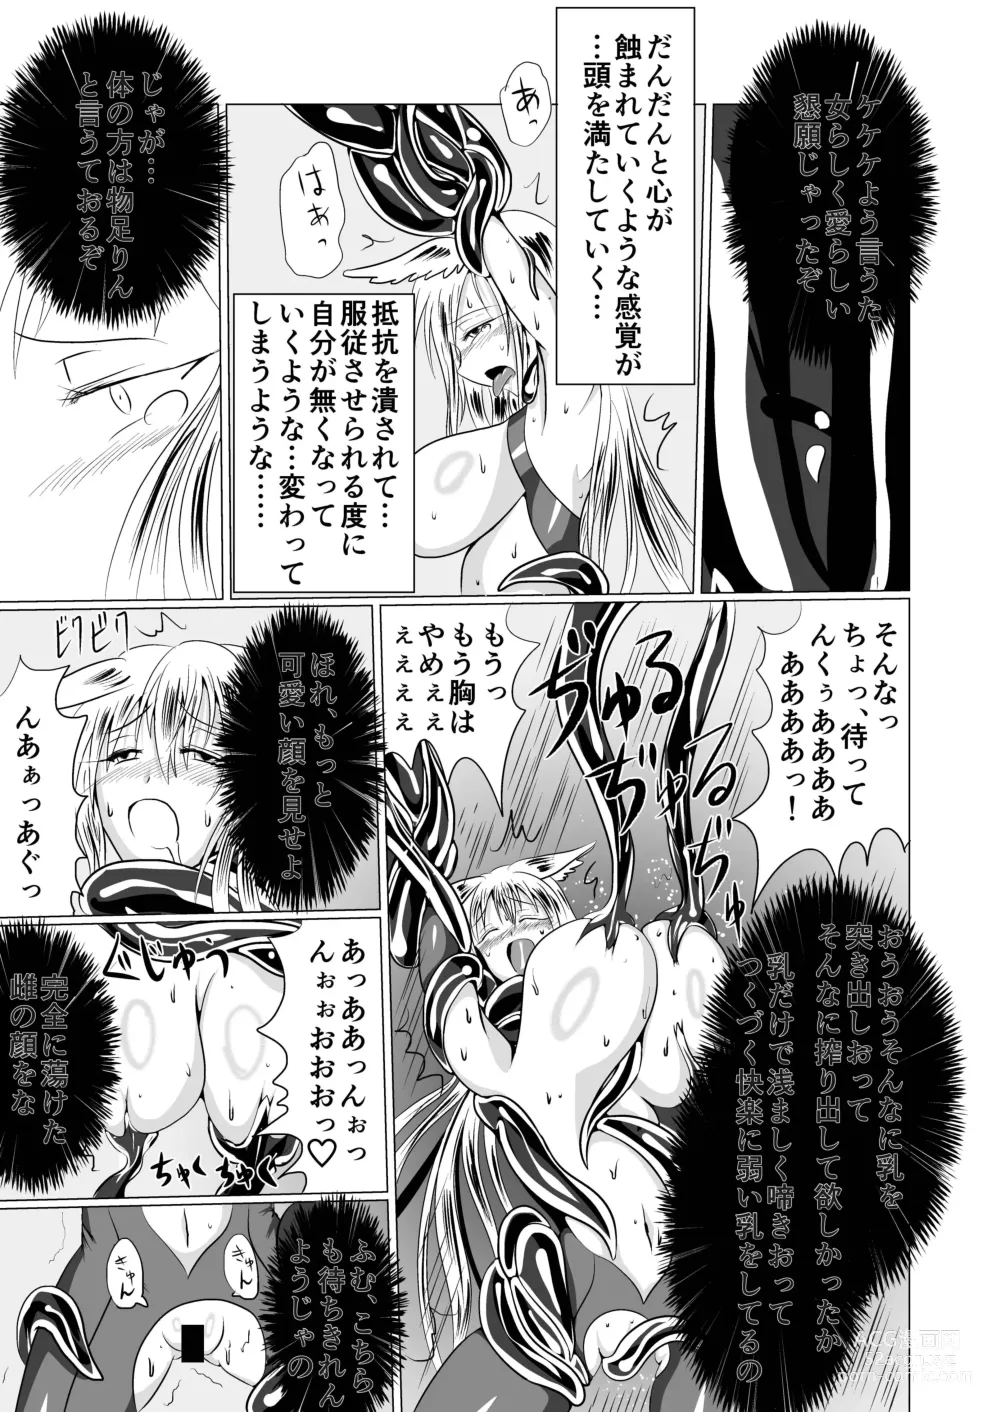 Page 34 of doujinshi Jyoshika Inari Onagokainari